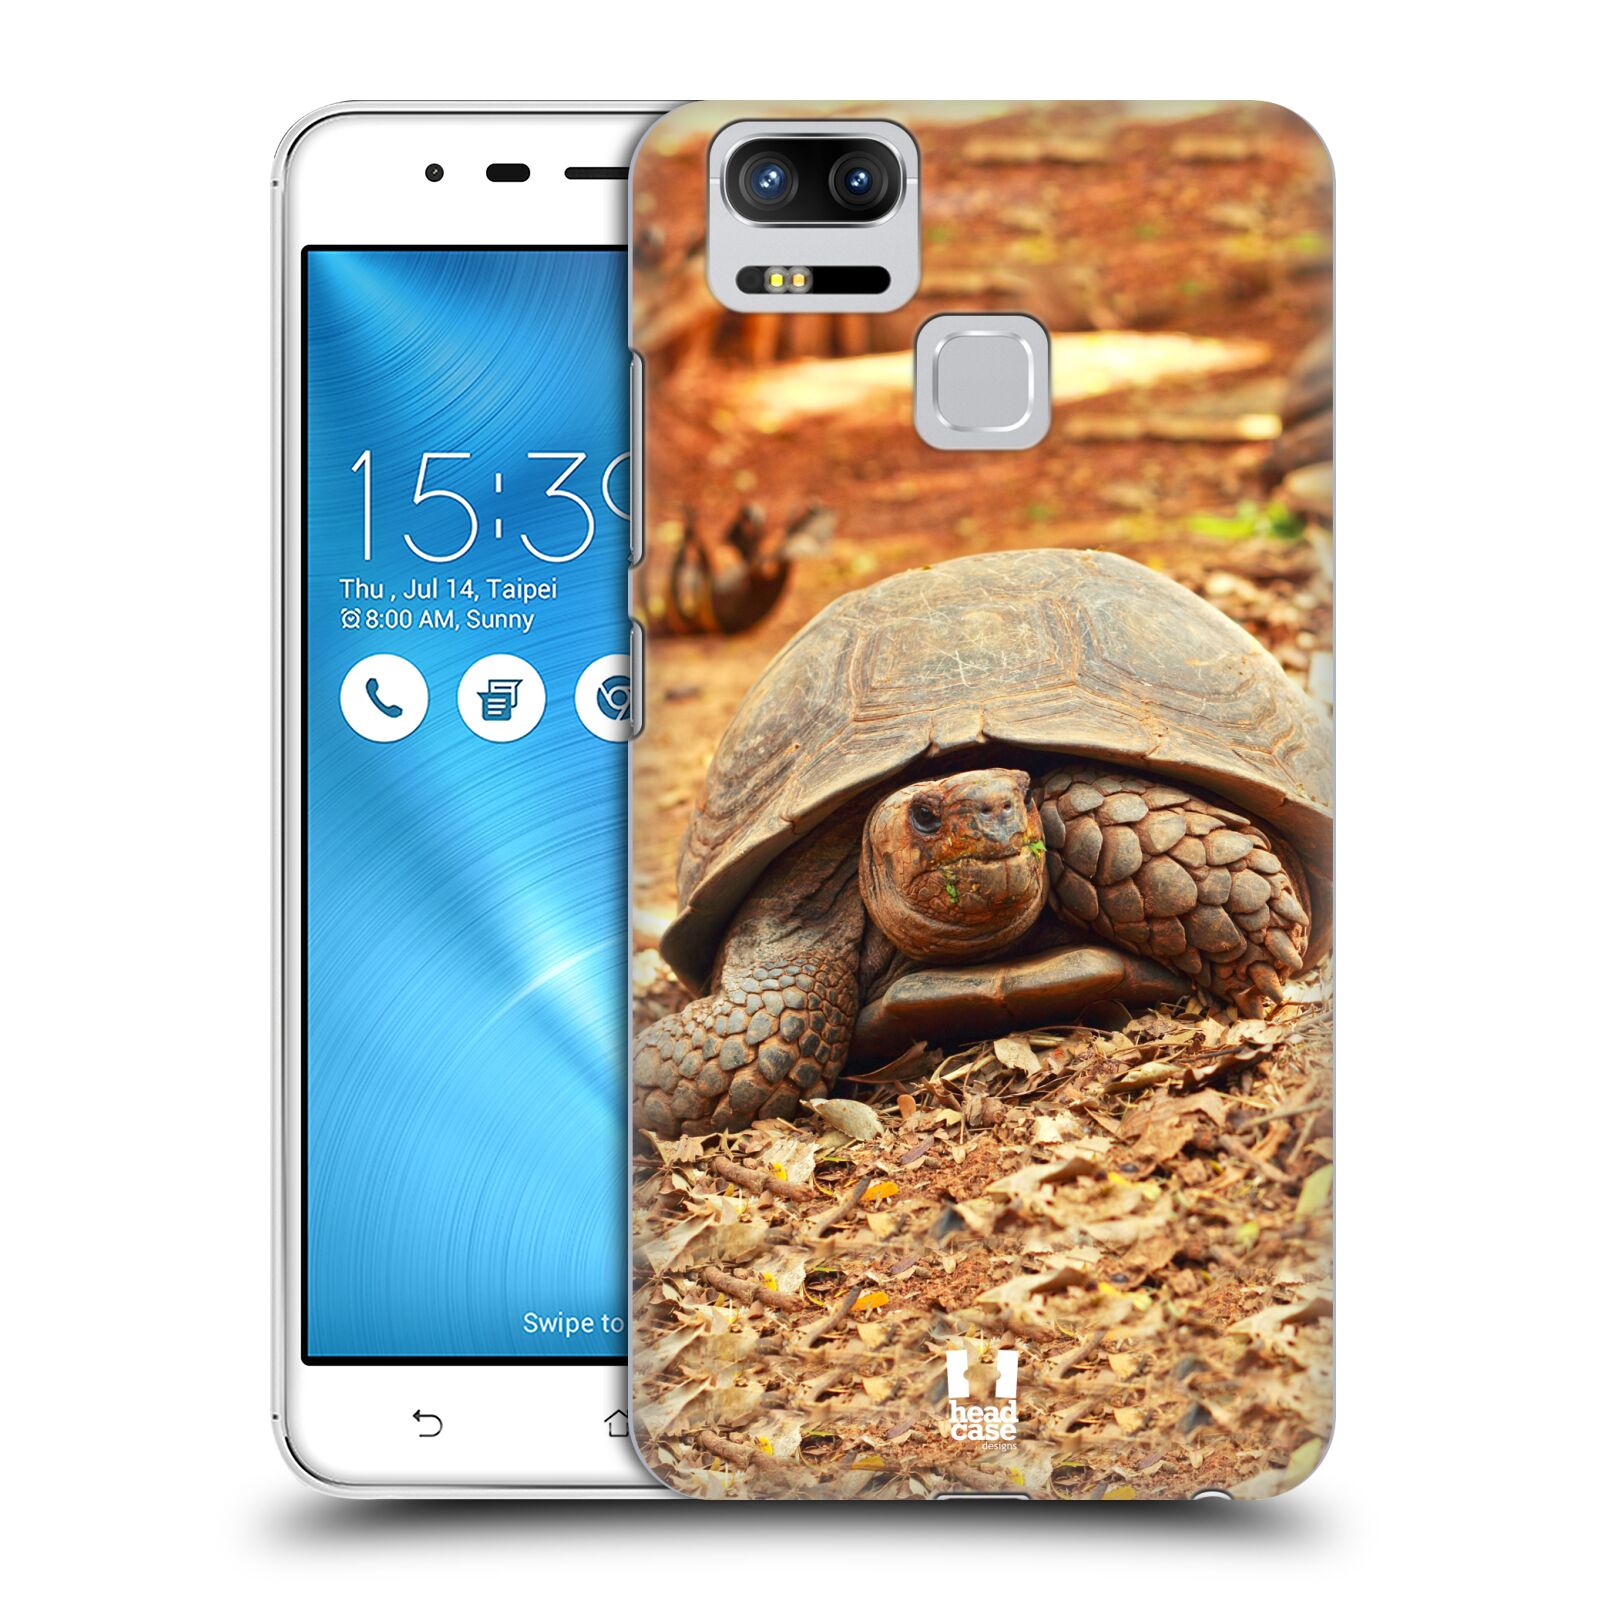 HEAD CASE plastový obal na mobil Asus Zenfone 3 Zoom ZE553KL vzor slavná zvířata foto želva